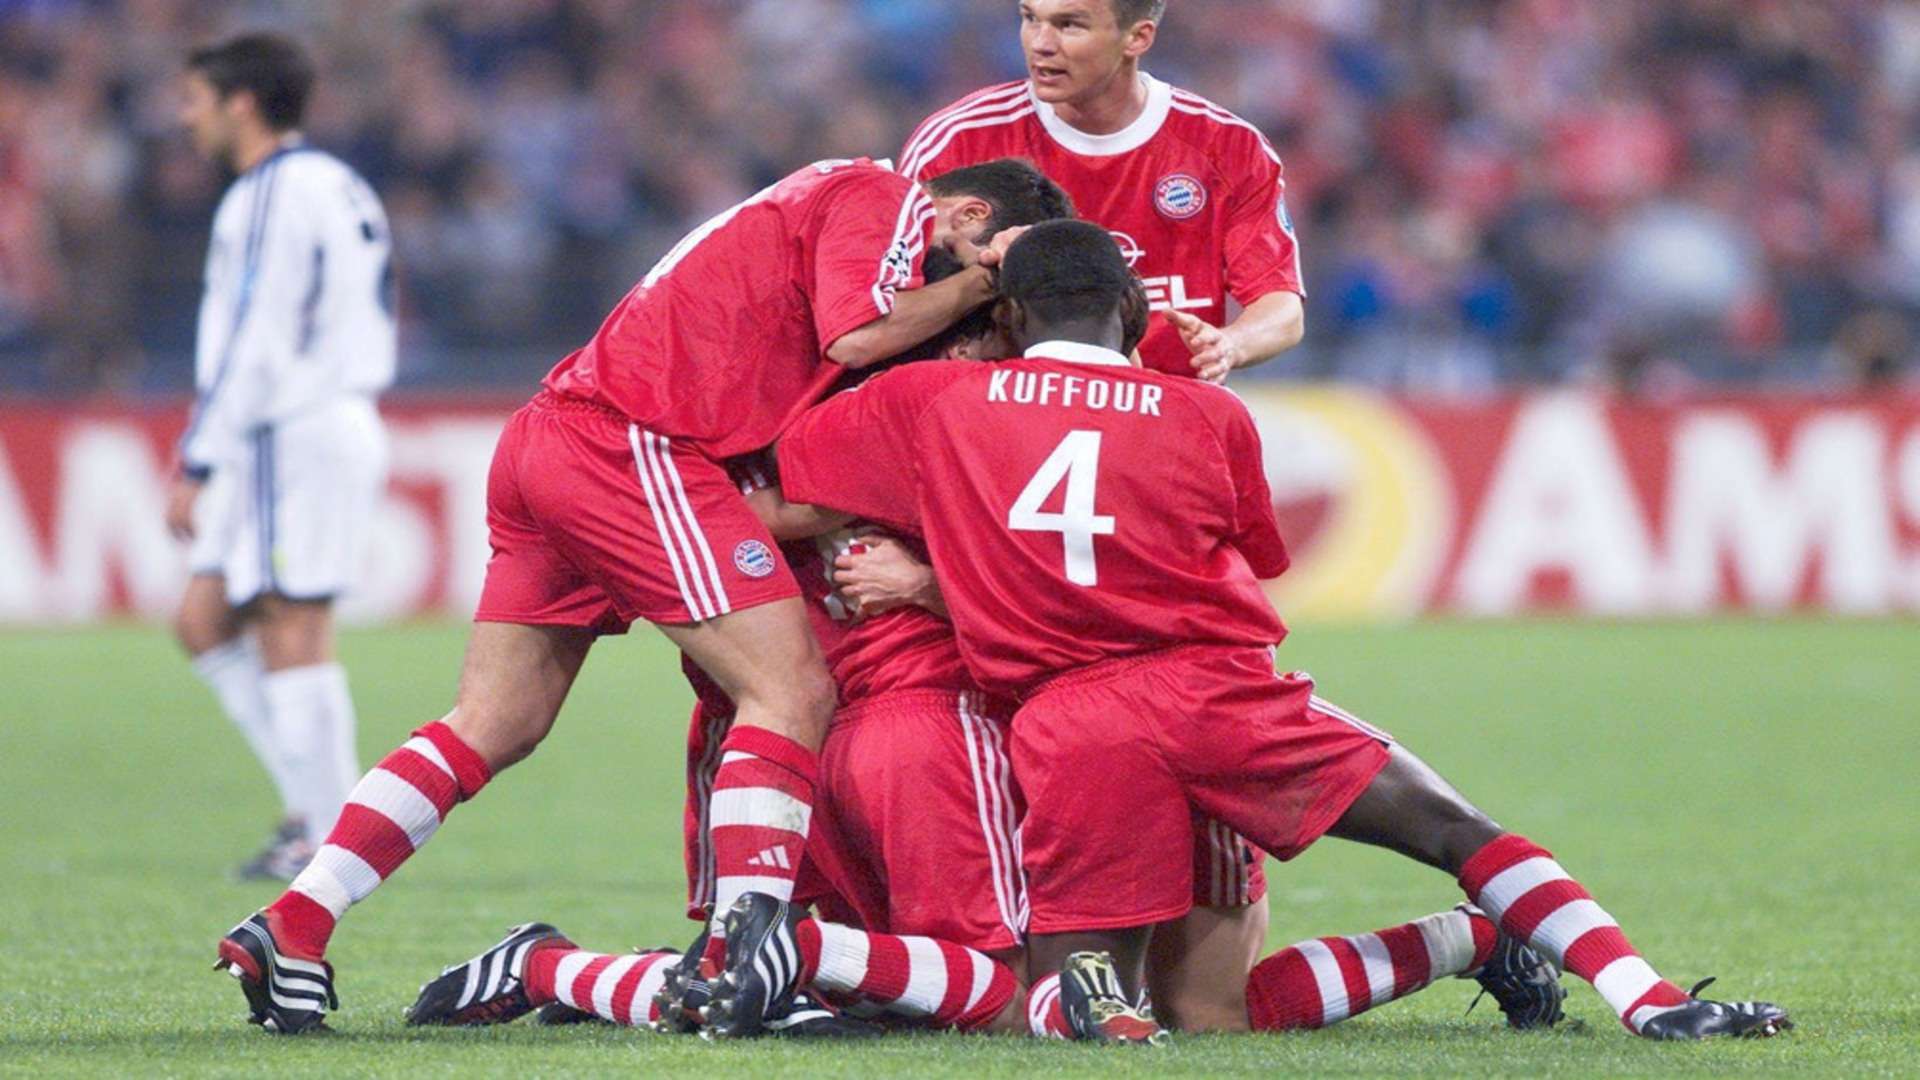 Kuffour Bayern 2001